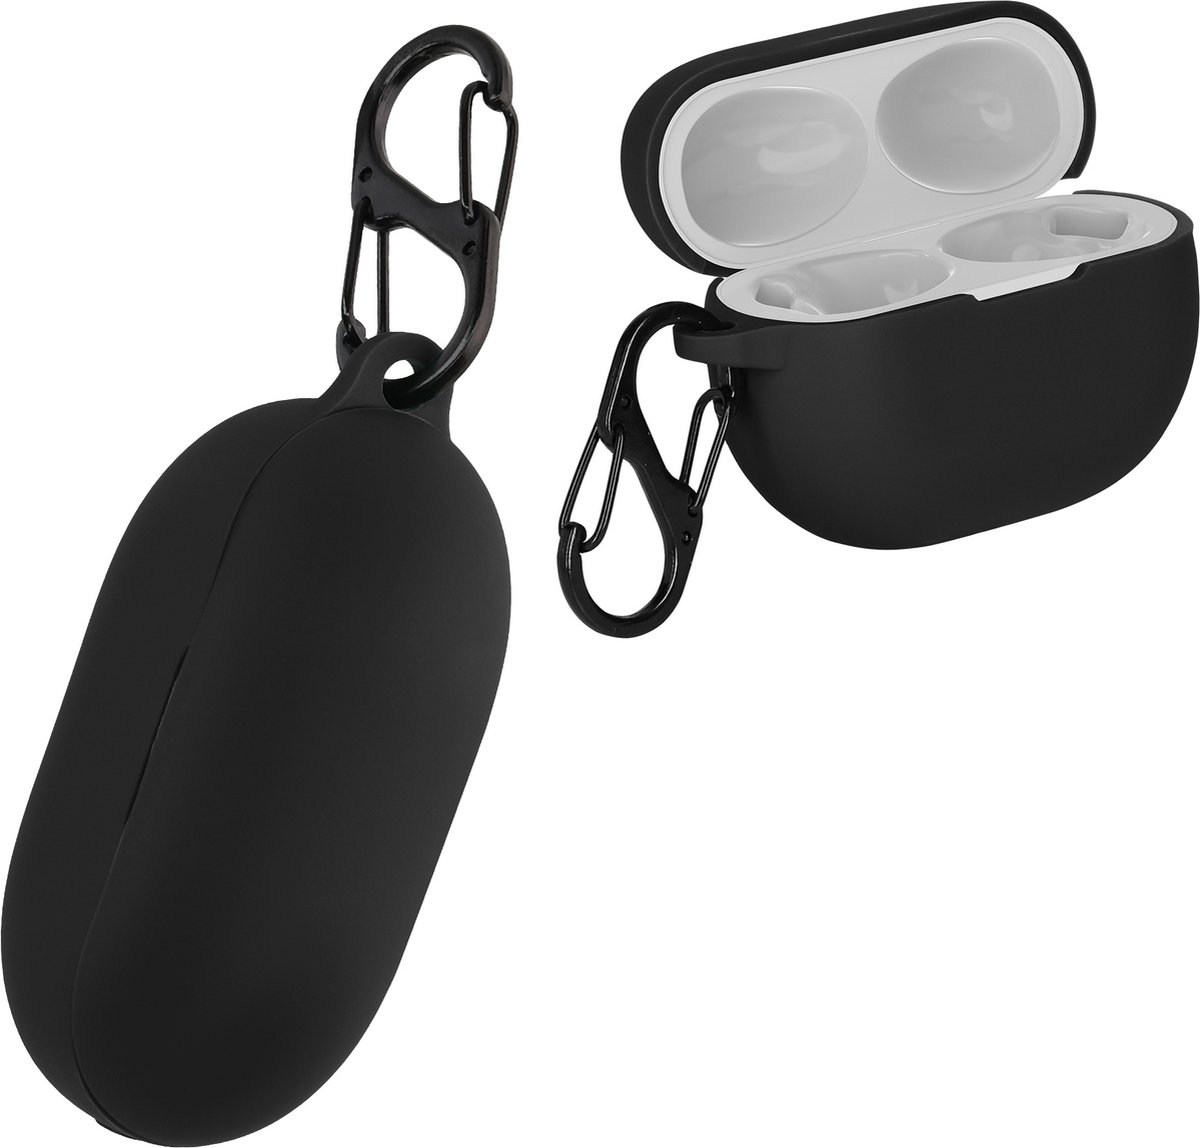 kwmobile Hoes voor Huawei Freebuds Pro 2 - Siliconen cover voor oordopjes in zwart